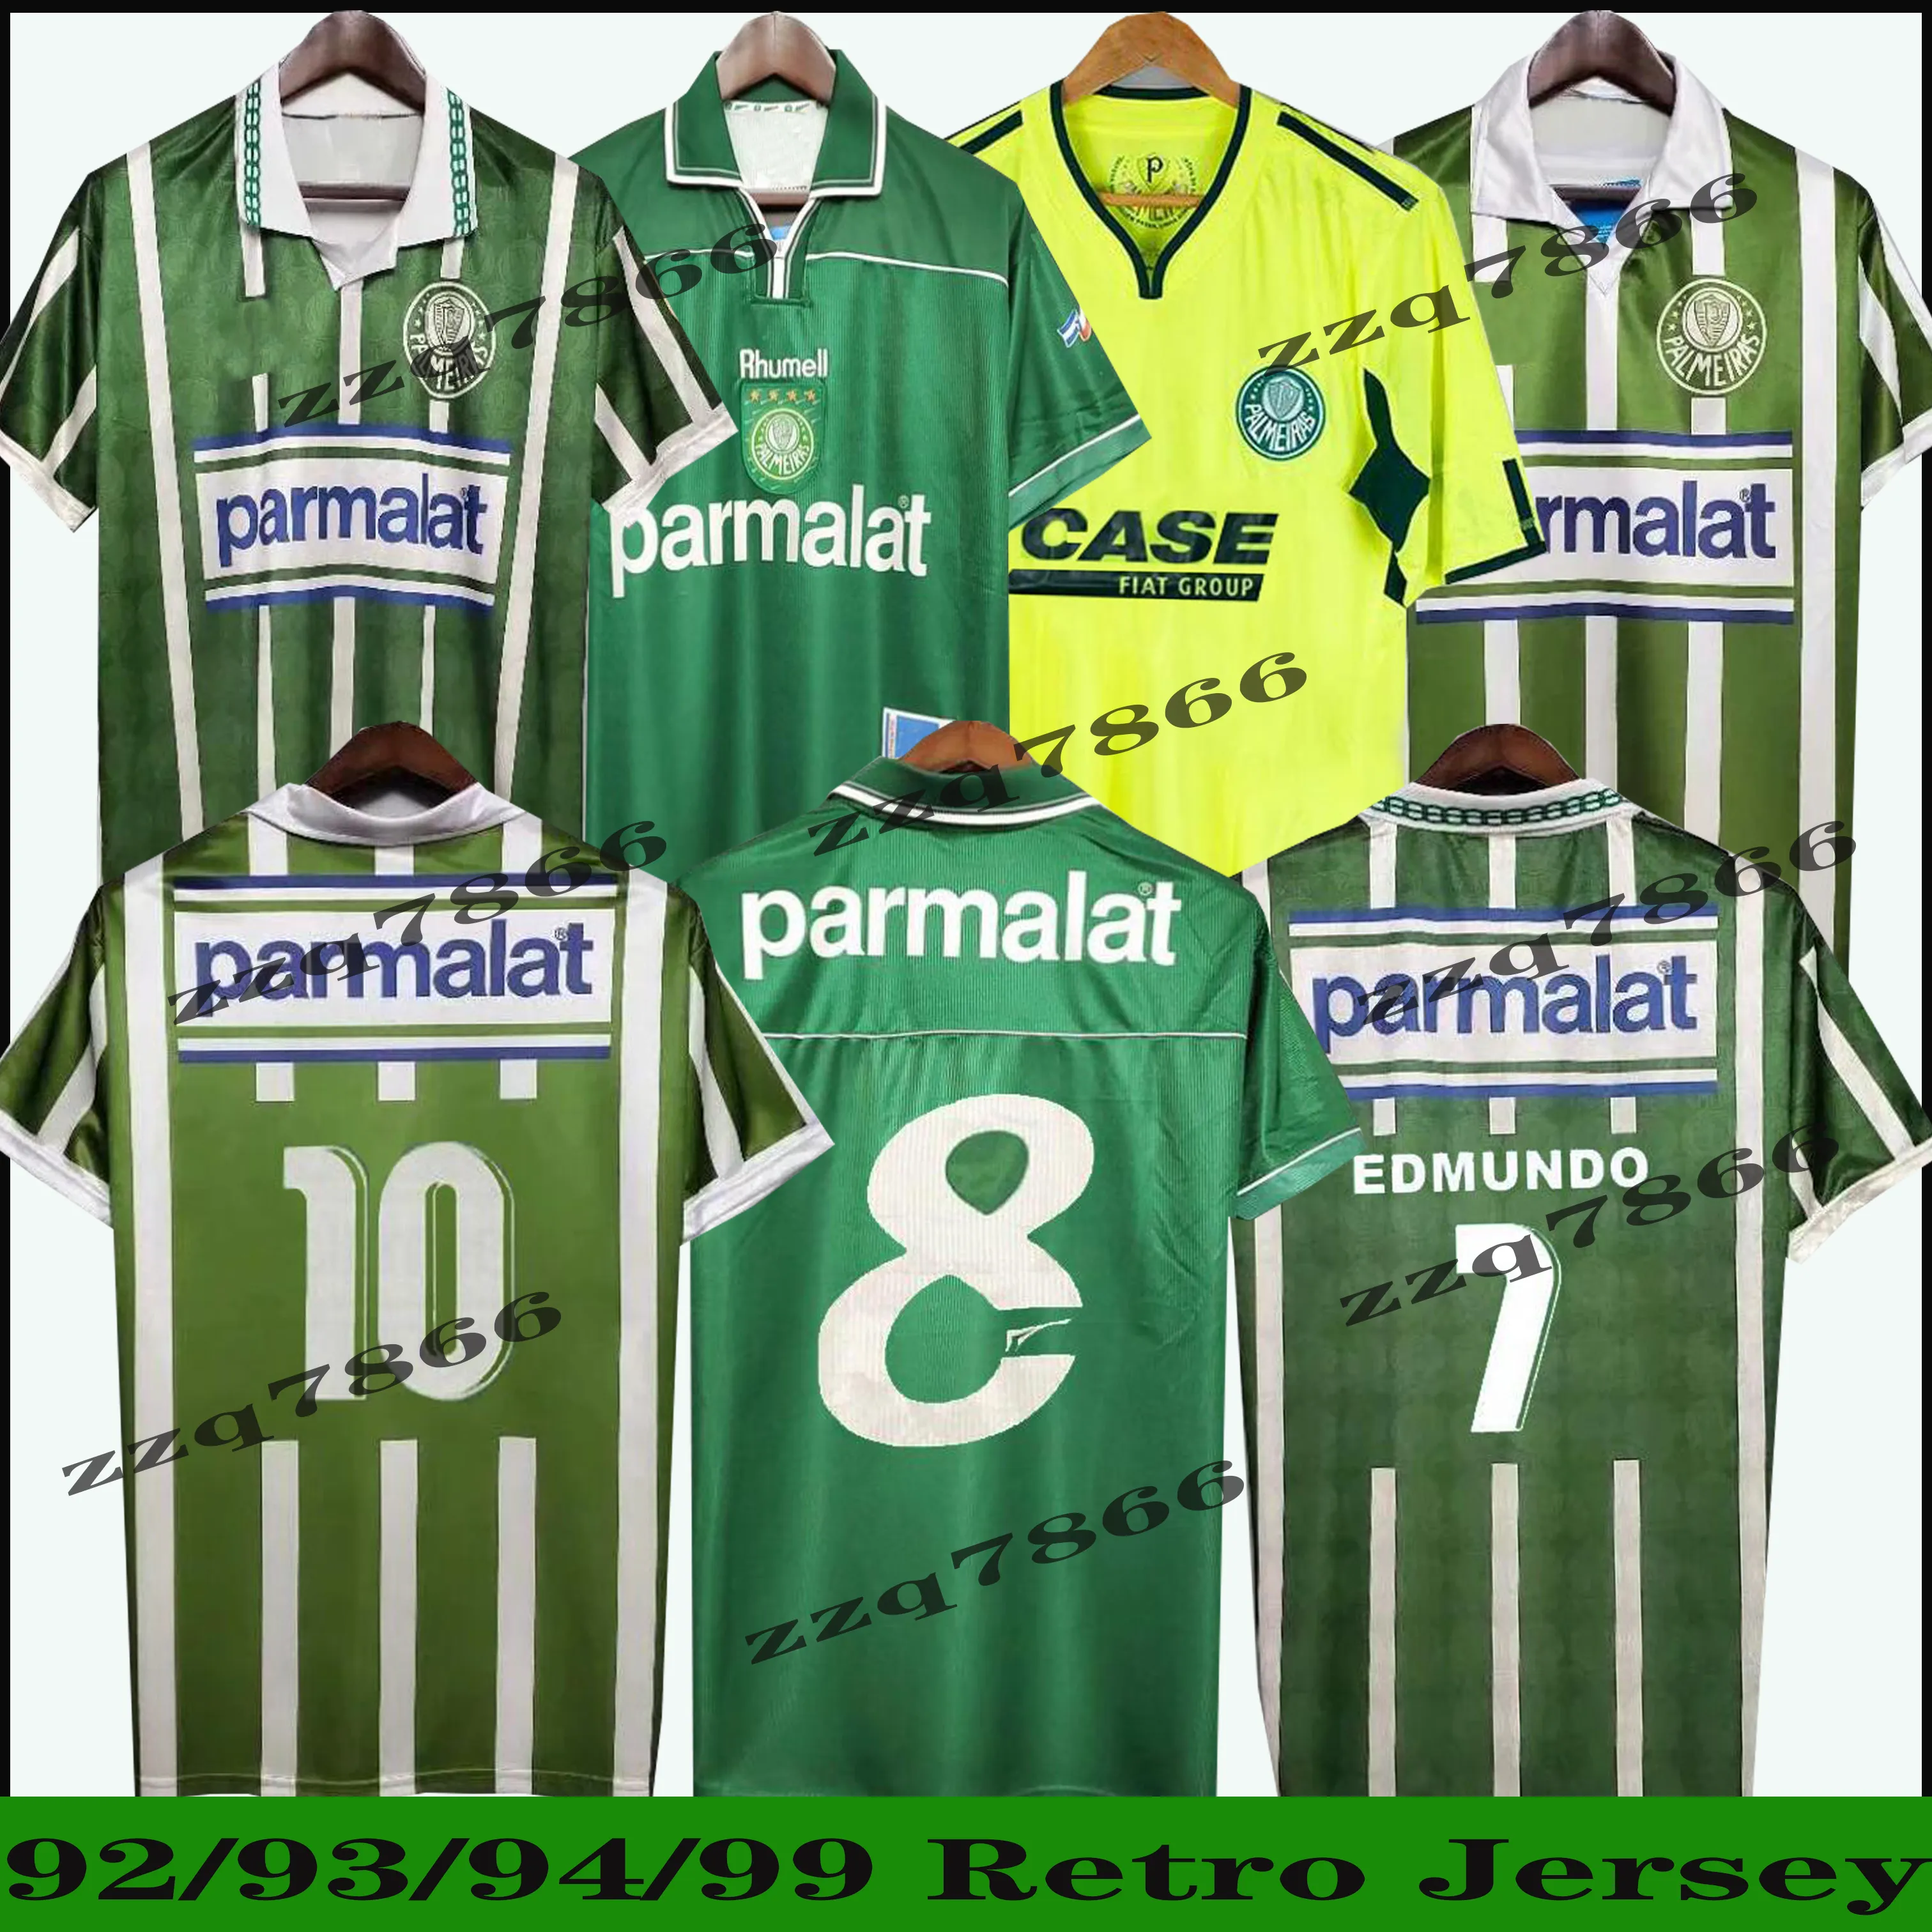 1992 1993 1994 Palmeiras R. CARLOS EDMUNDO Retro Mens Soccer Jerseys 1999 2010 ZINHO RIVALDO EVAIR Ewerthon Football Shirts Uniforms Camisas de Futebol